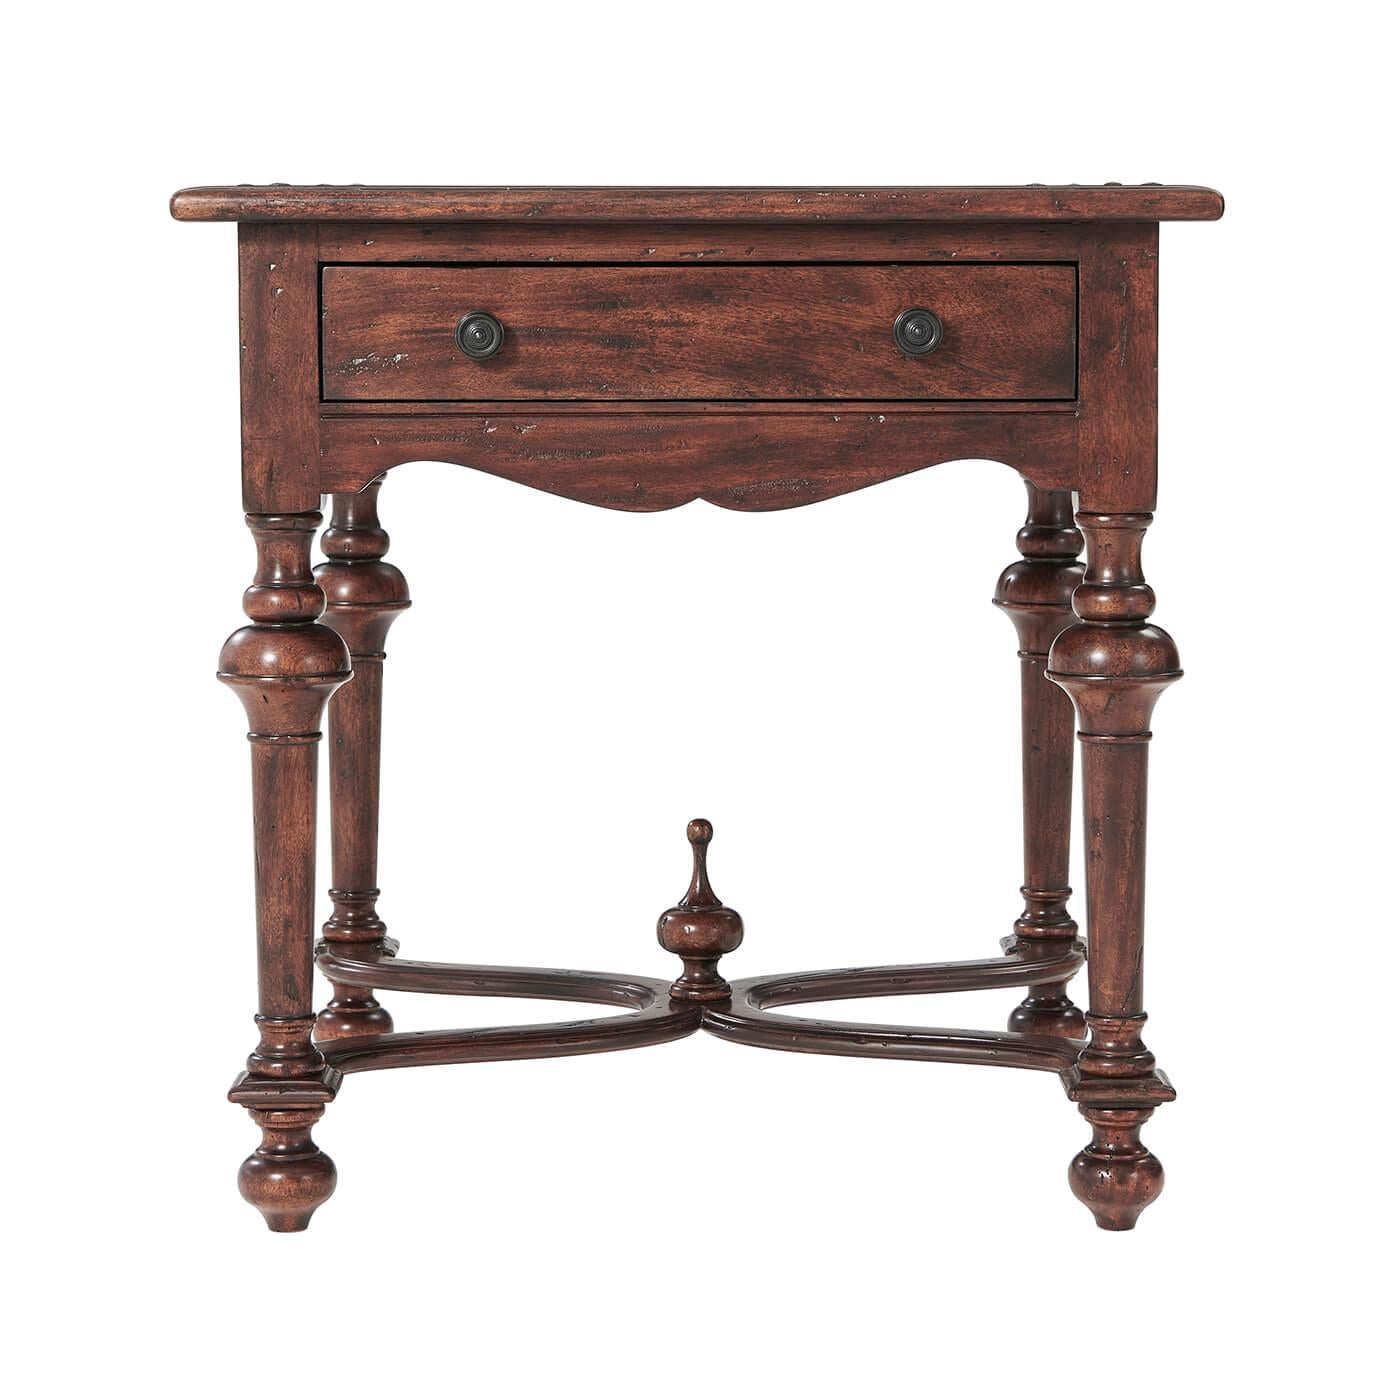 Table d'appoint de style William et Mary en bois vieilli, le plateau carré en parqueterie au-dessus d'un tiroir, et les pieds tournés en cloche reliés par une civière serpentine en 